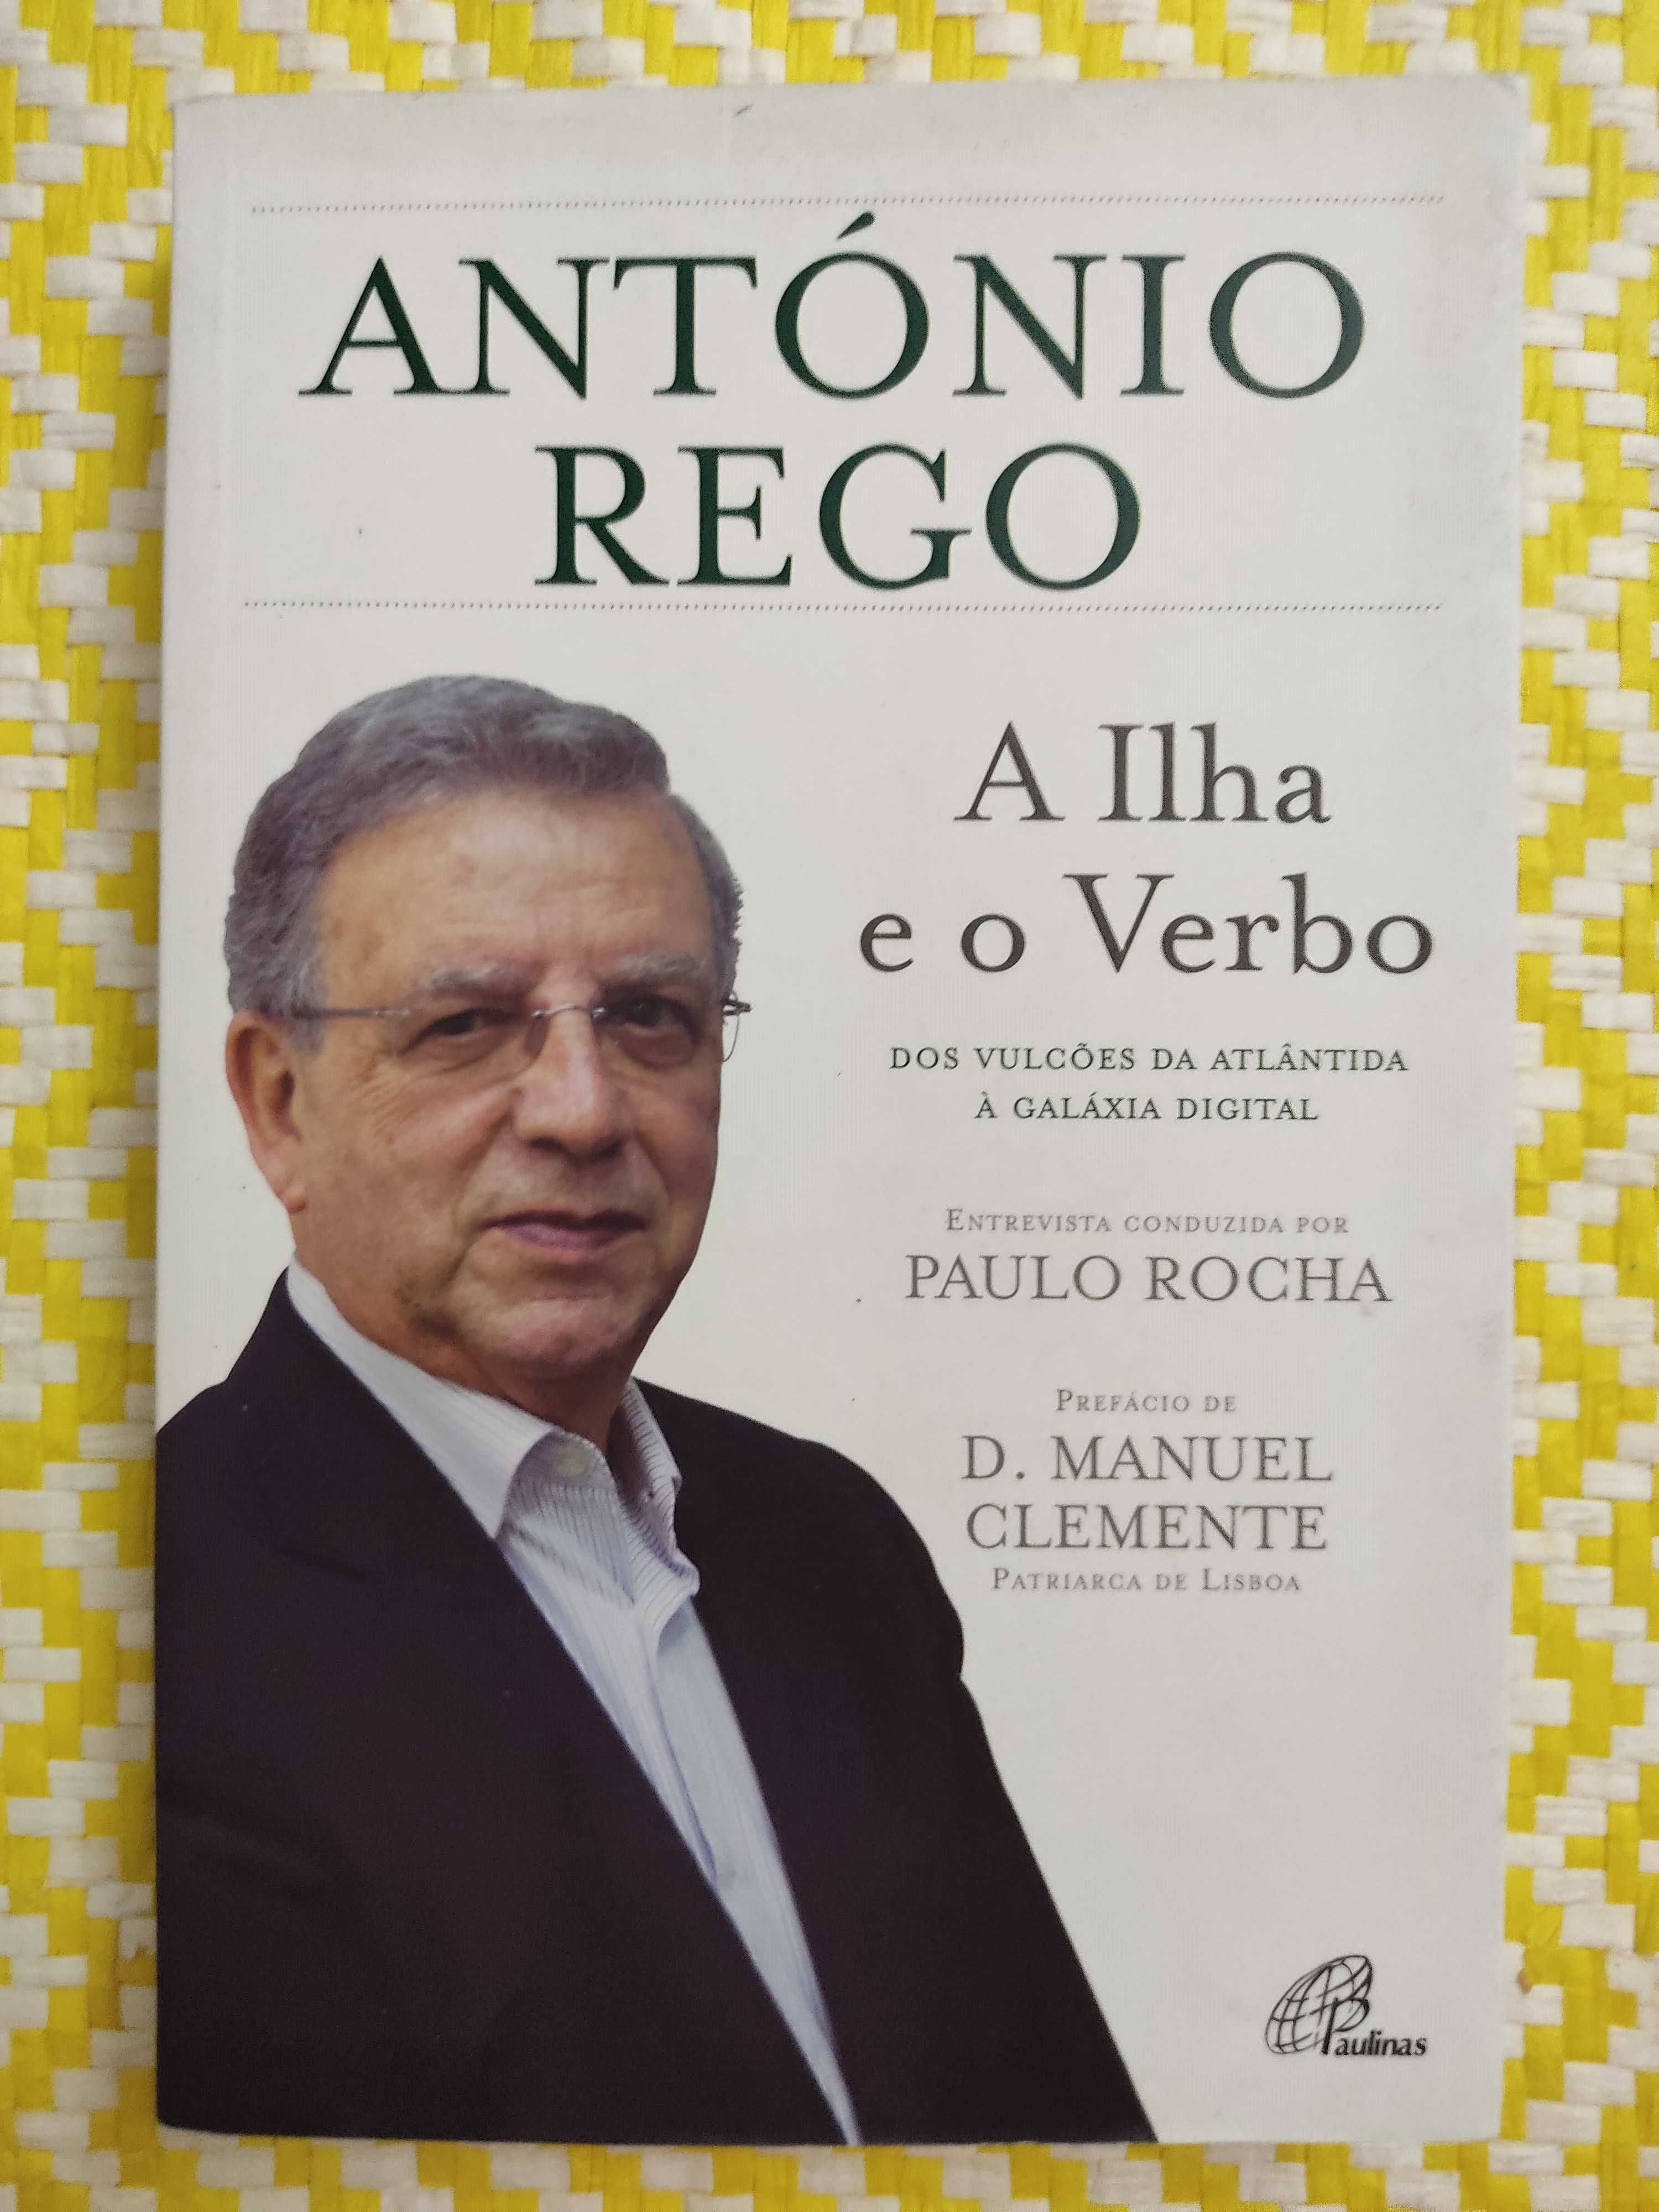 A ILHA E O VERBO
de António Rego e Paulo Rocha